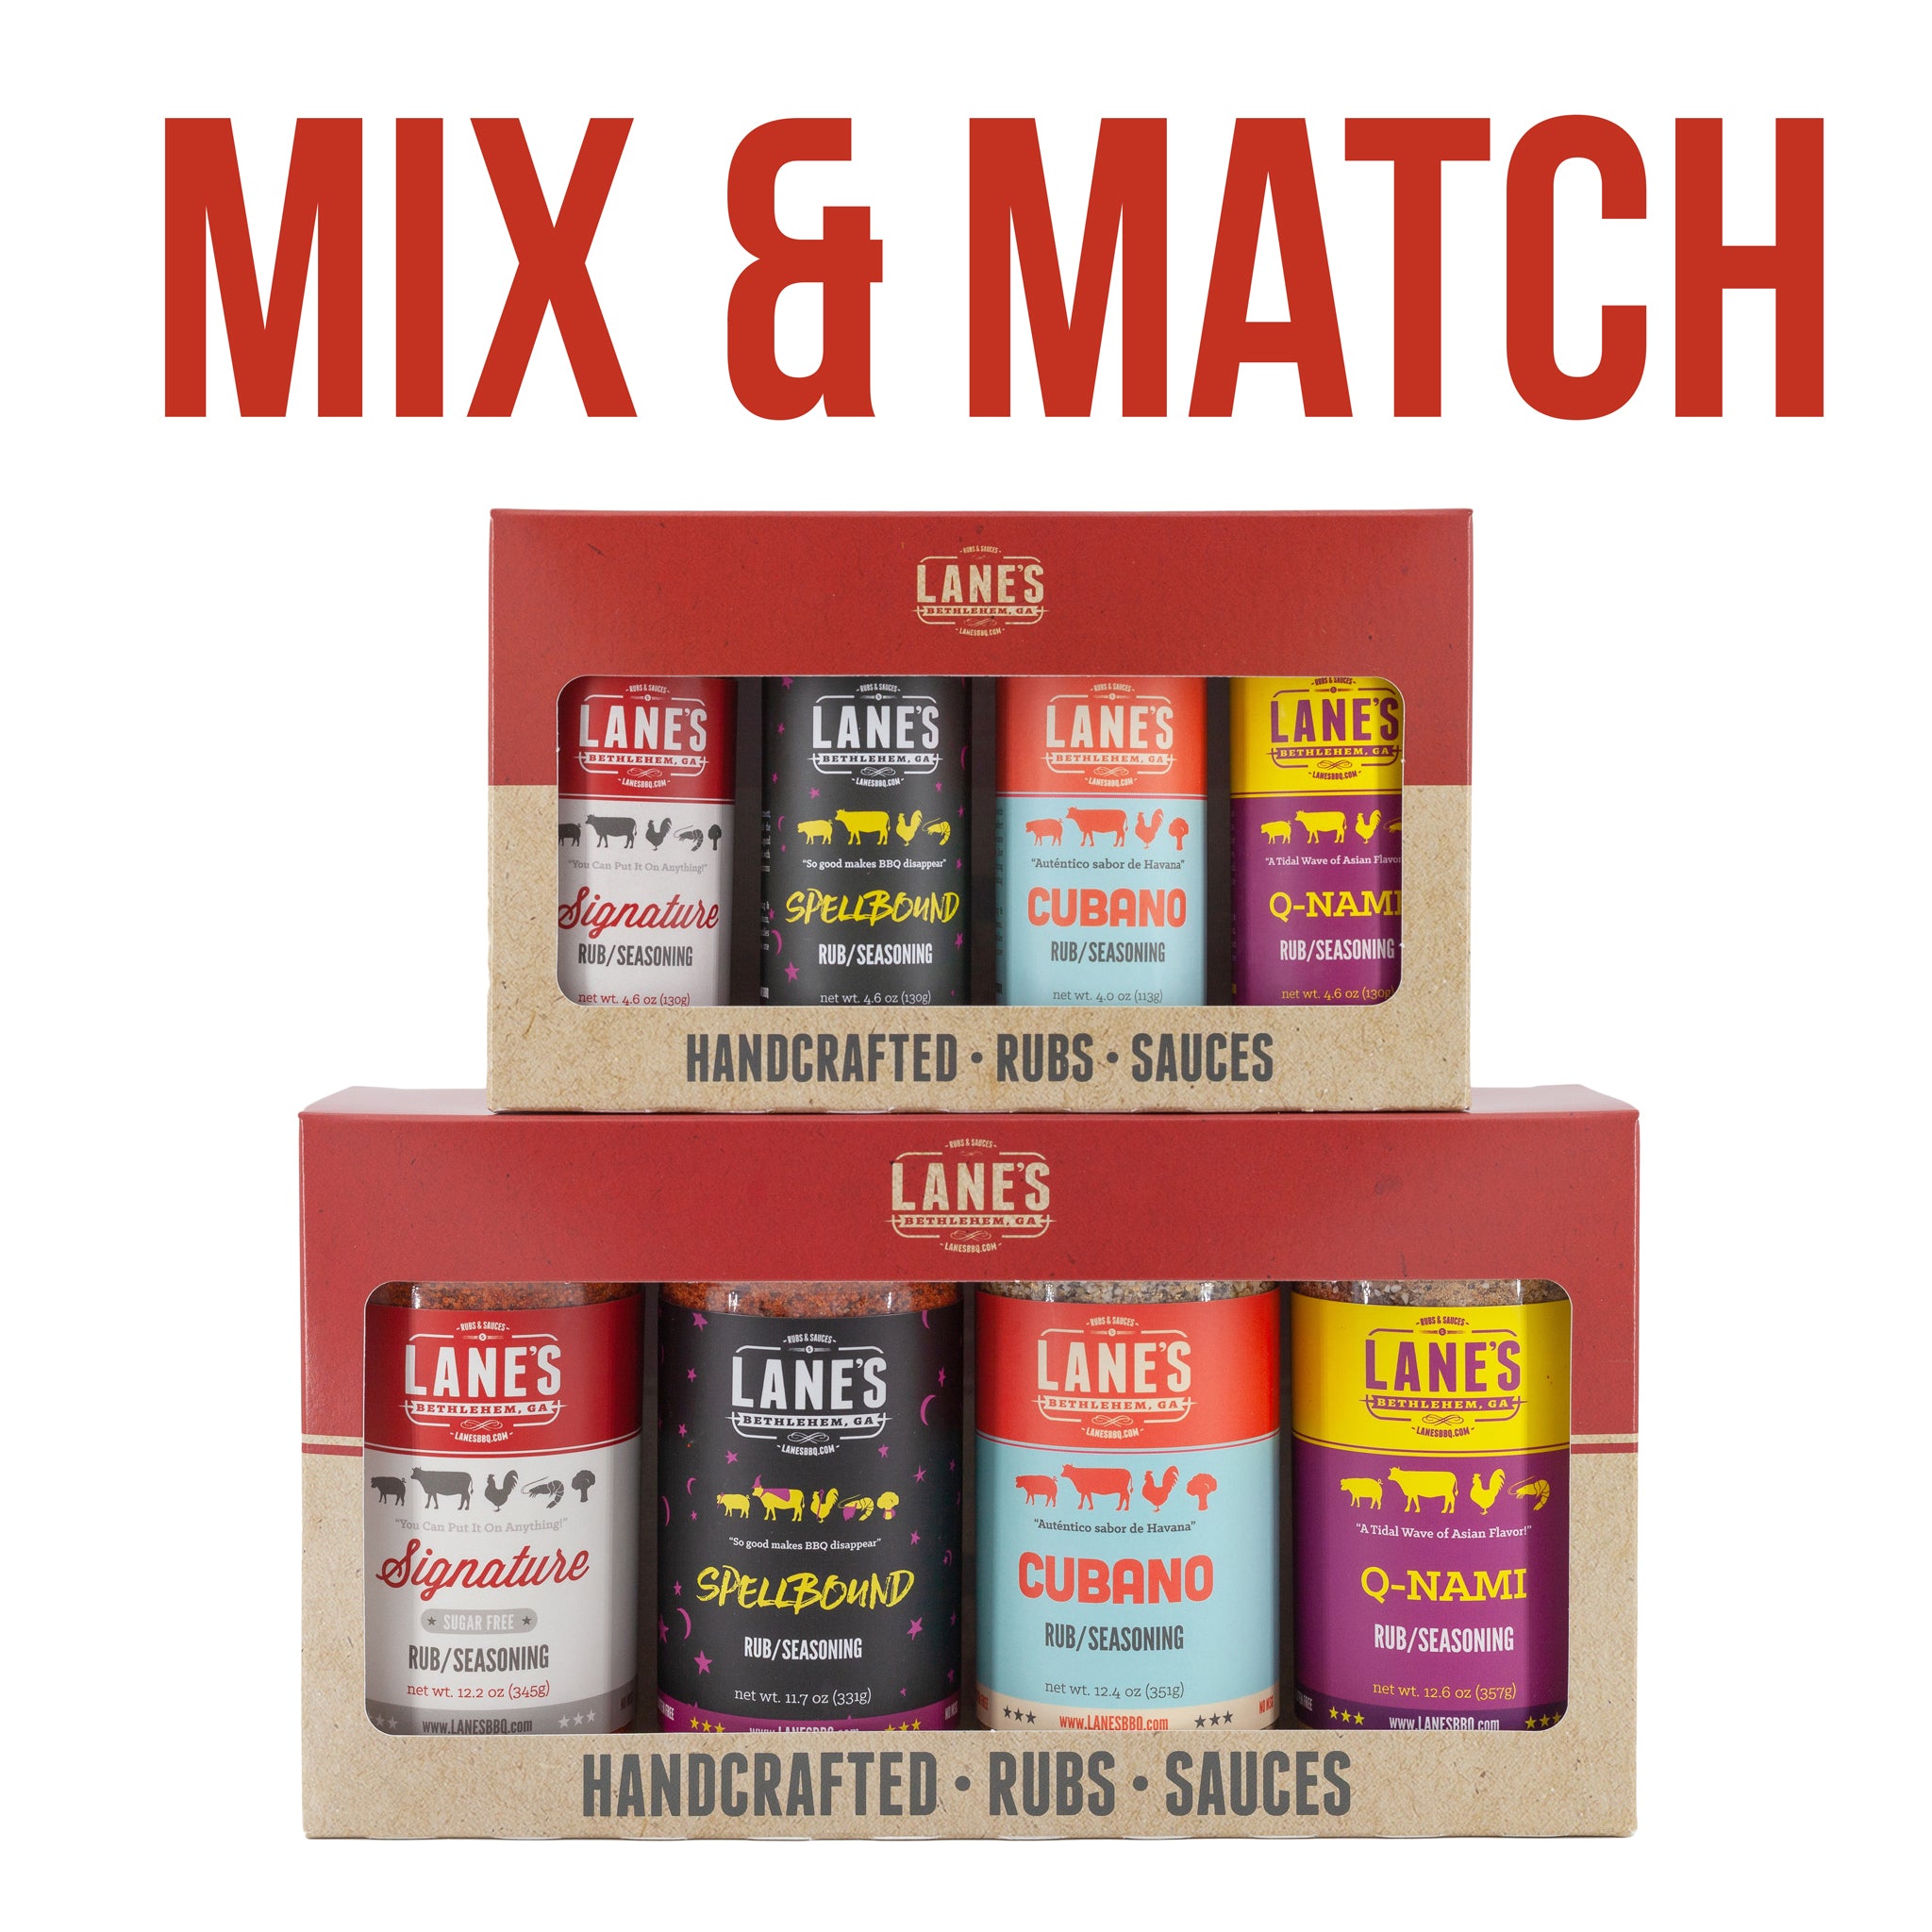 Mix & Match 4 oz Rub, Seasonings